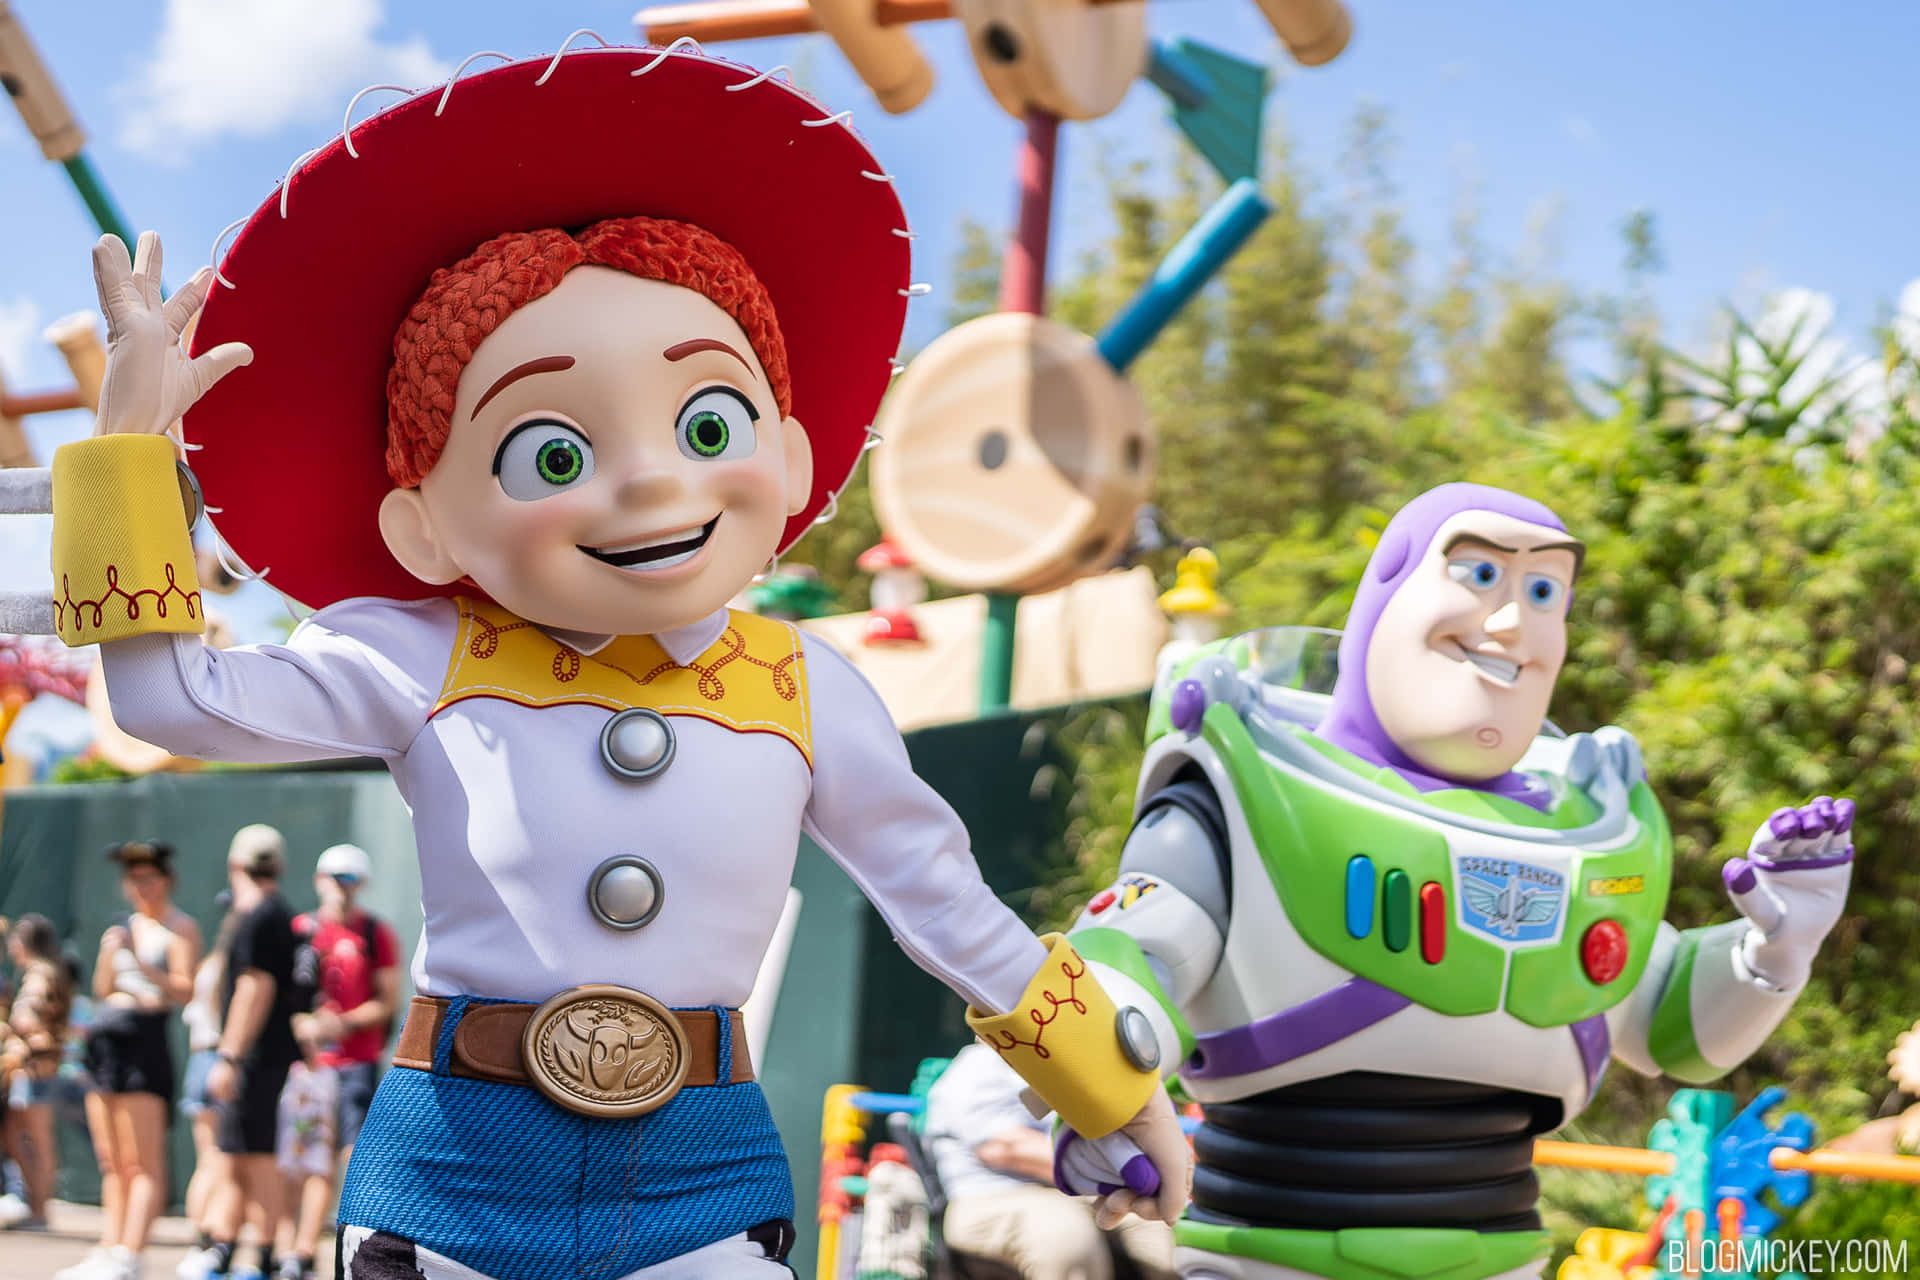 Toy Story Jessie Buzz Lightyear Picture